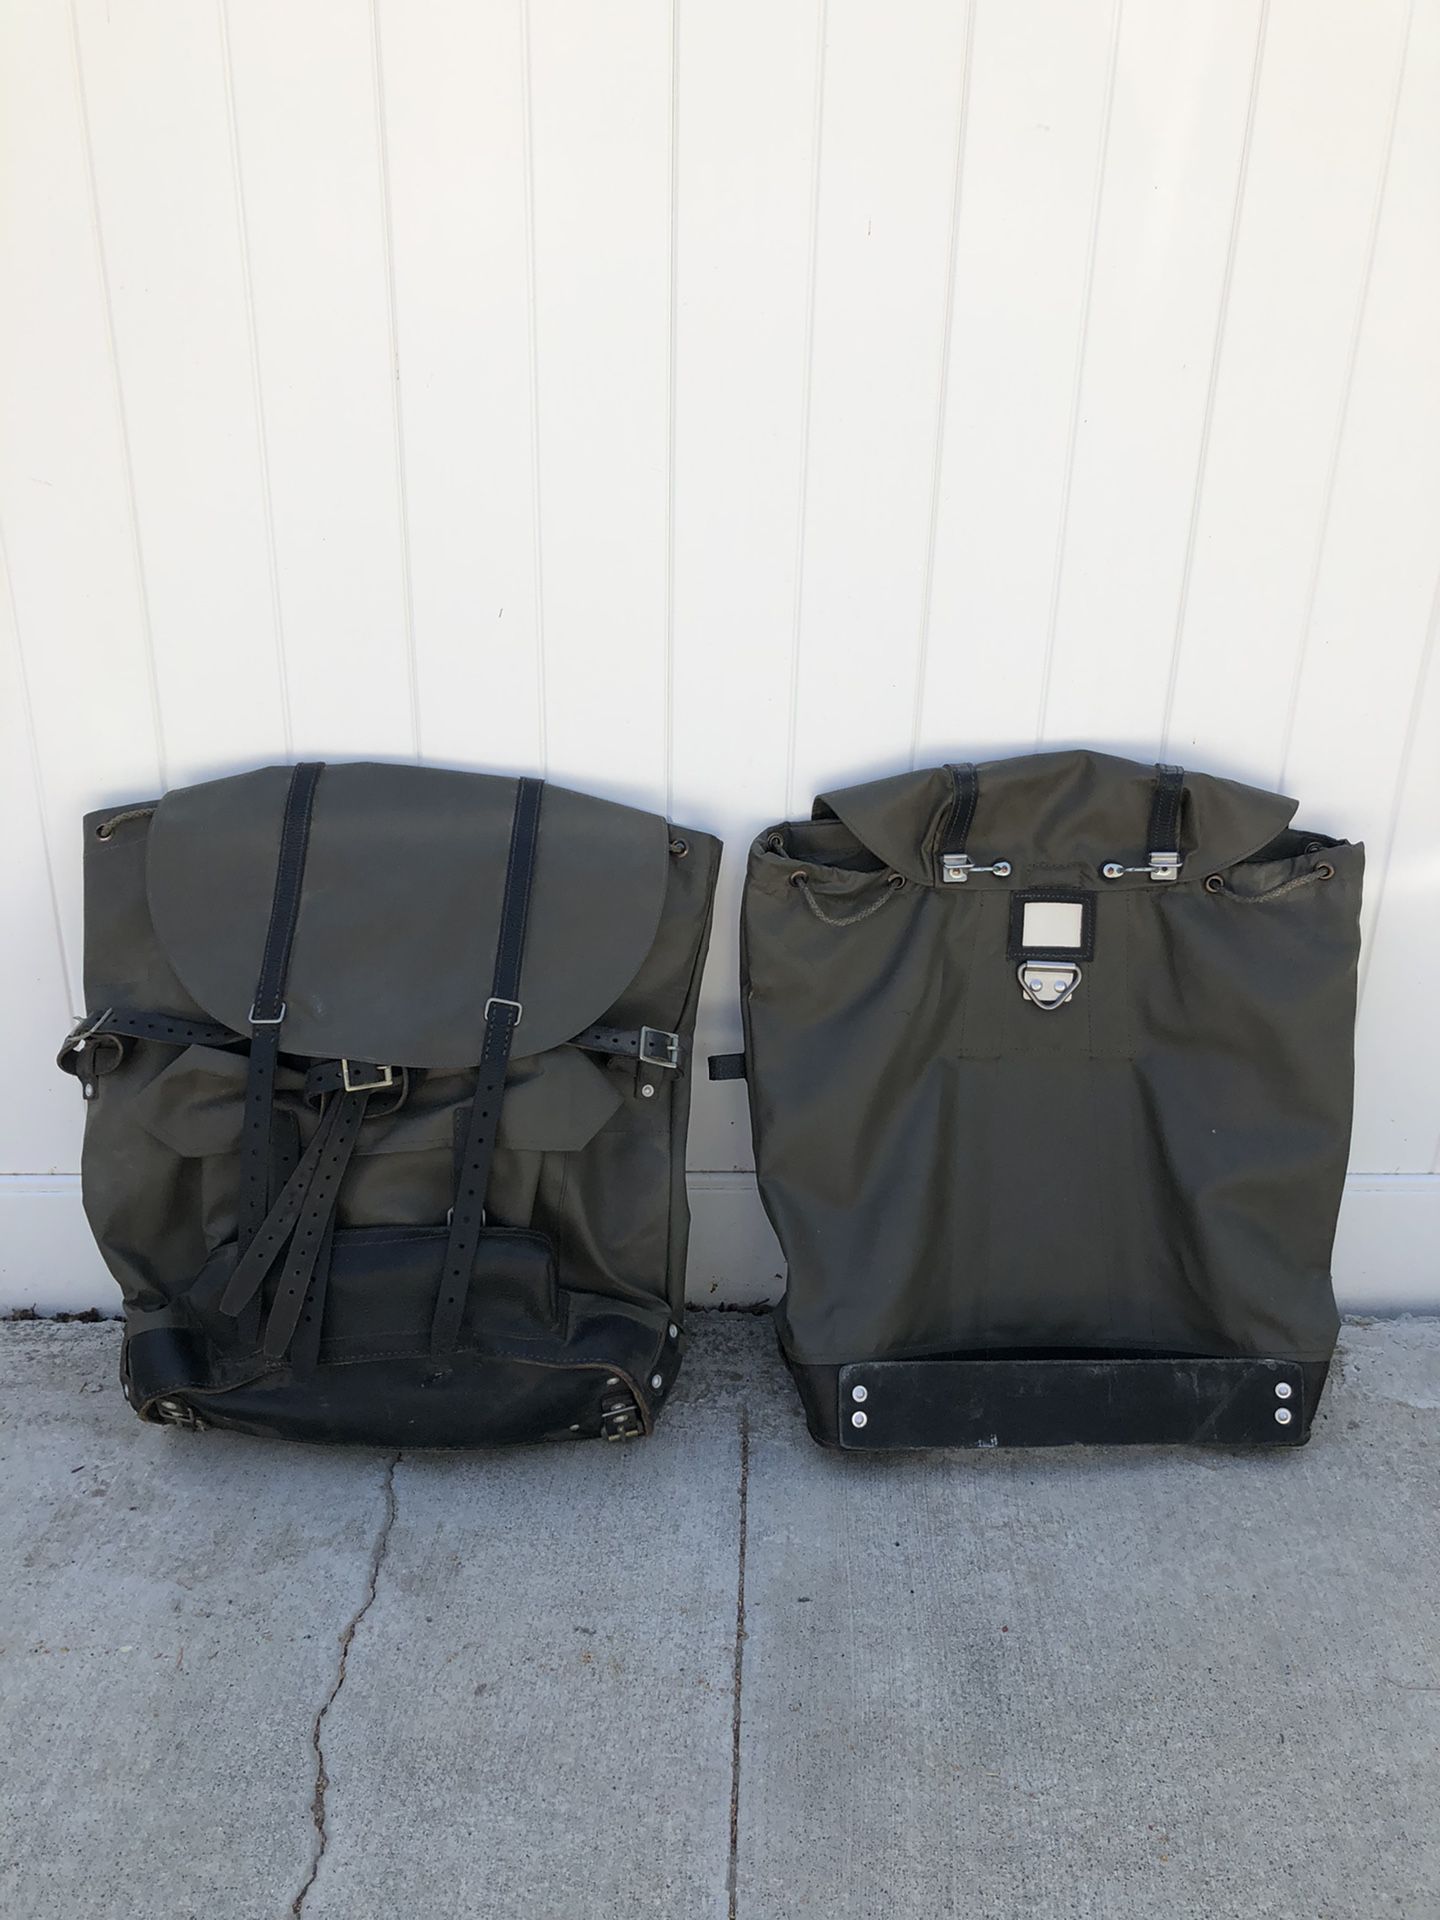 Army surplus backpacks